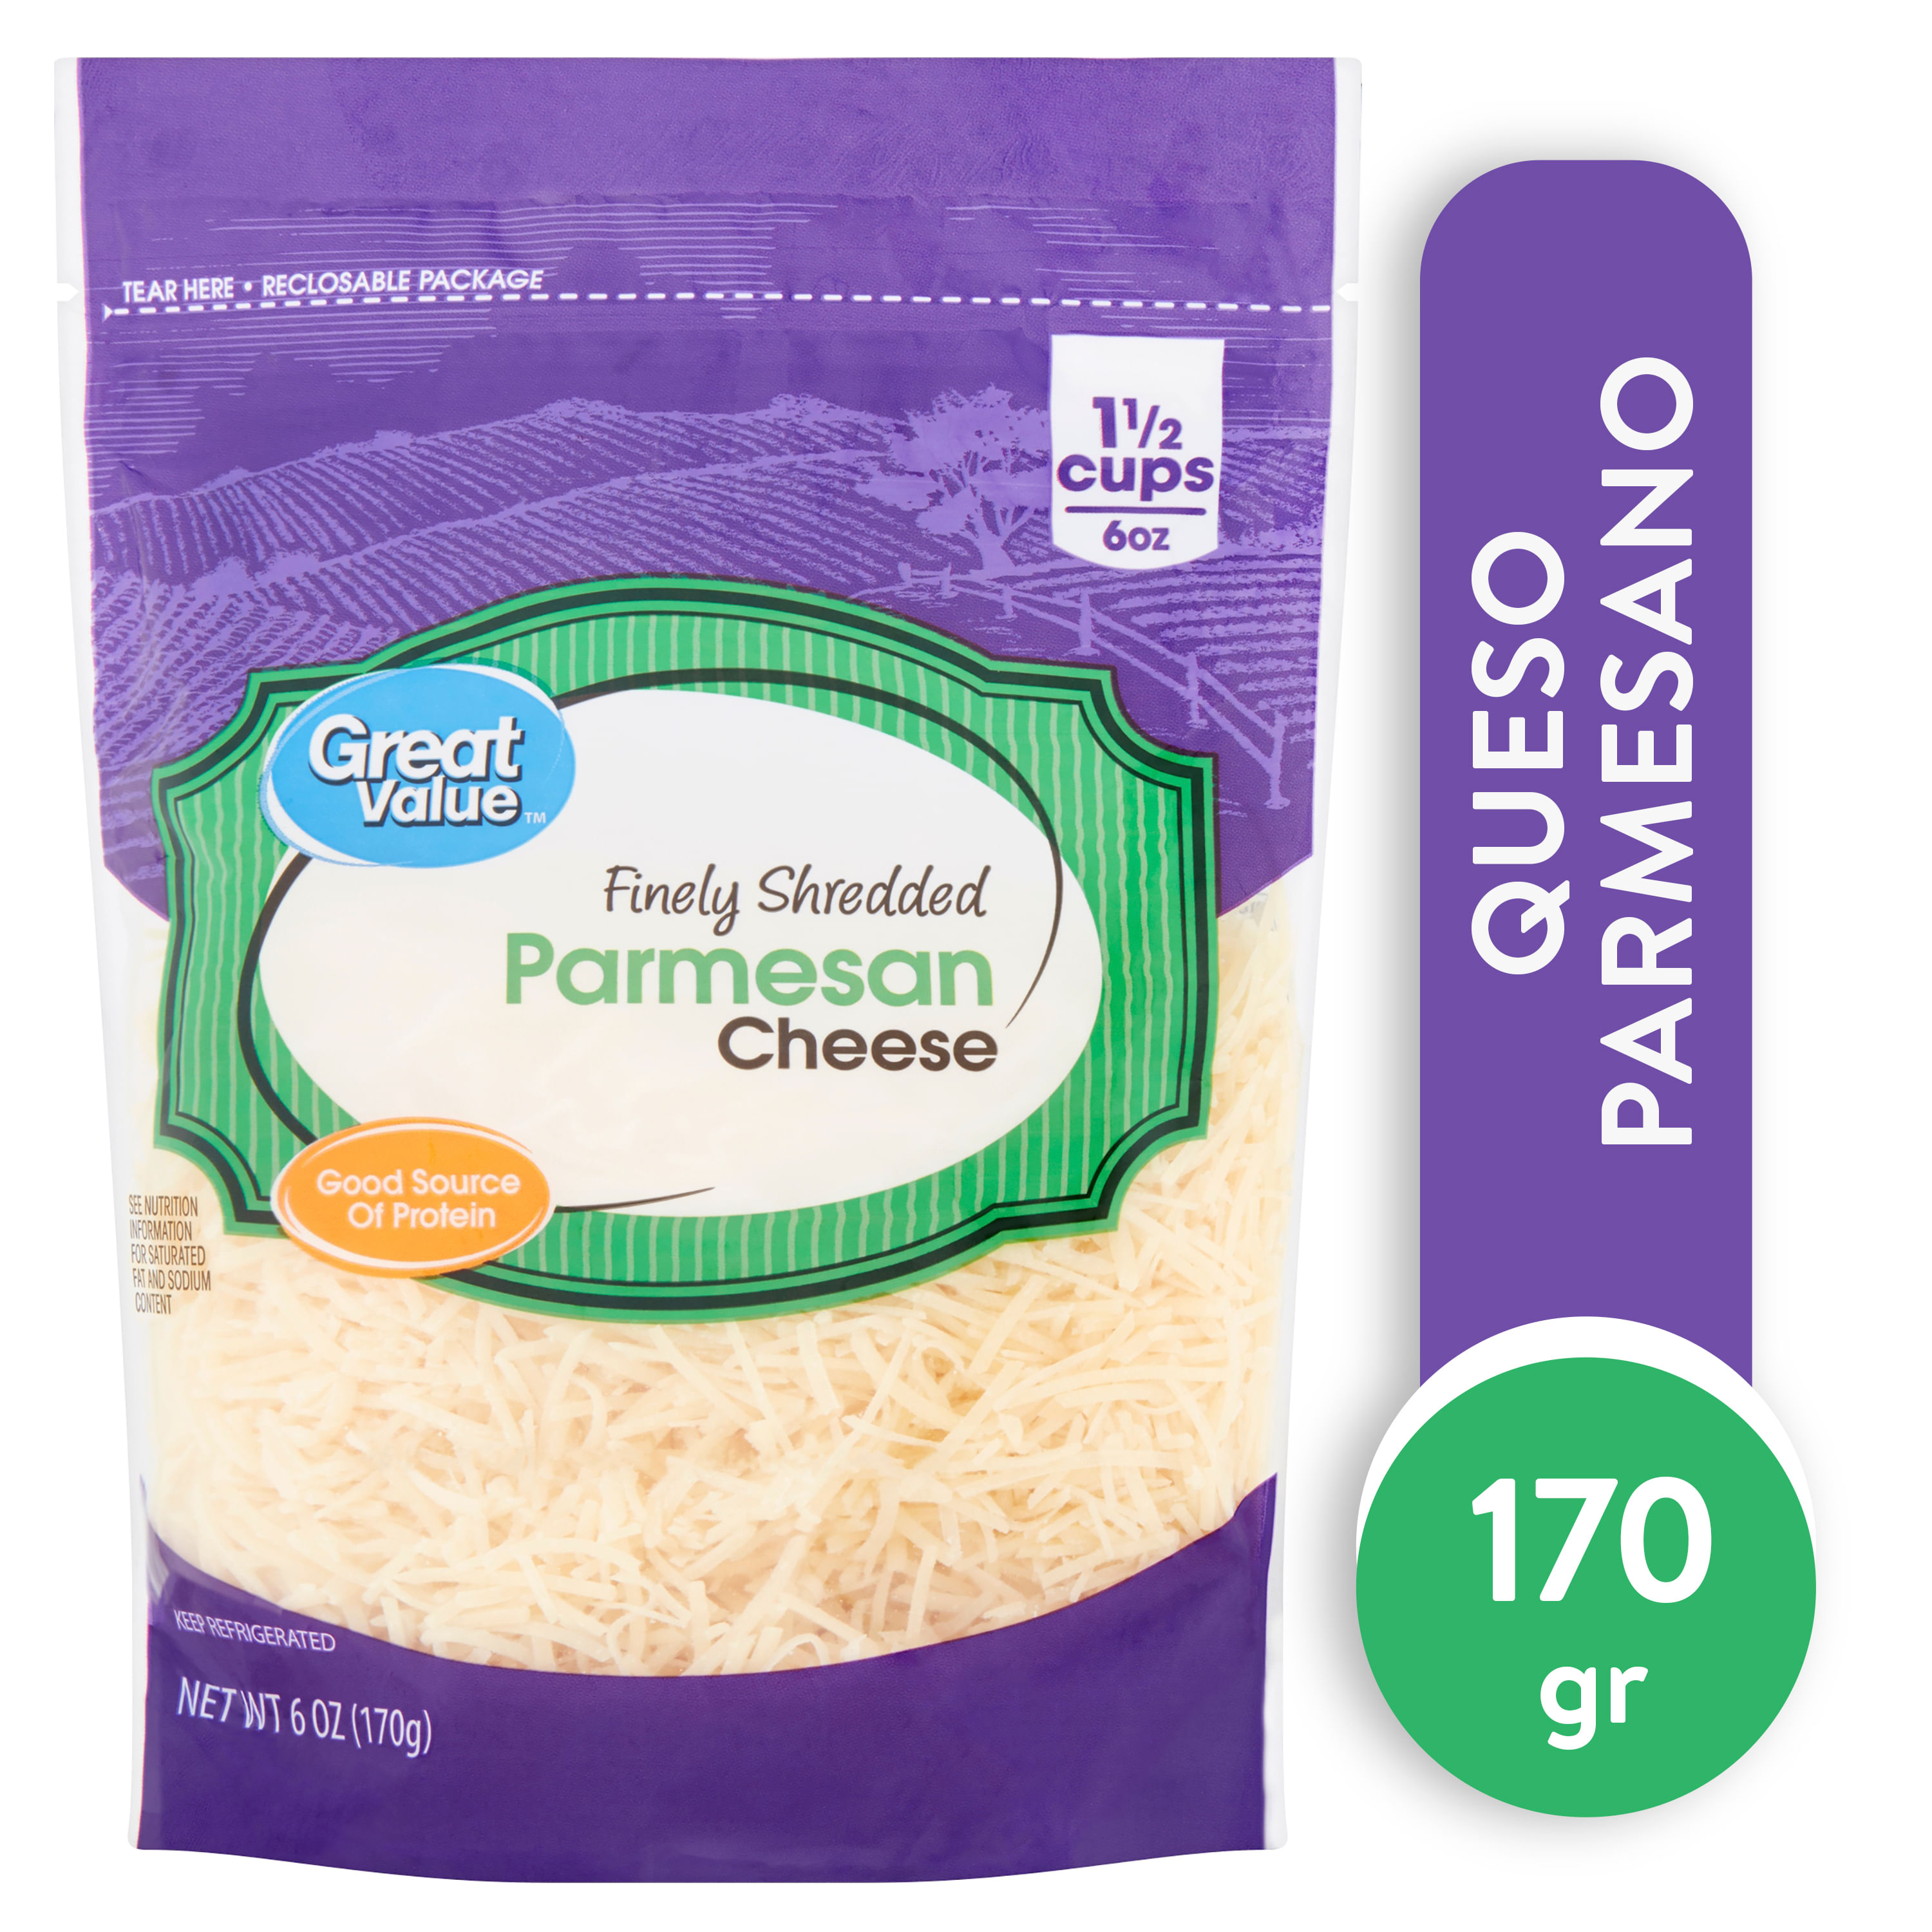 Queso-Great-Value-Parmesano-Ralladado-170gr-1-7692